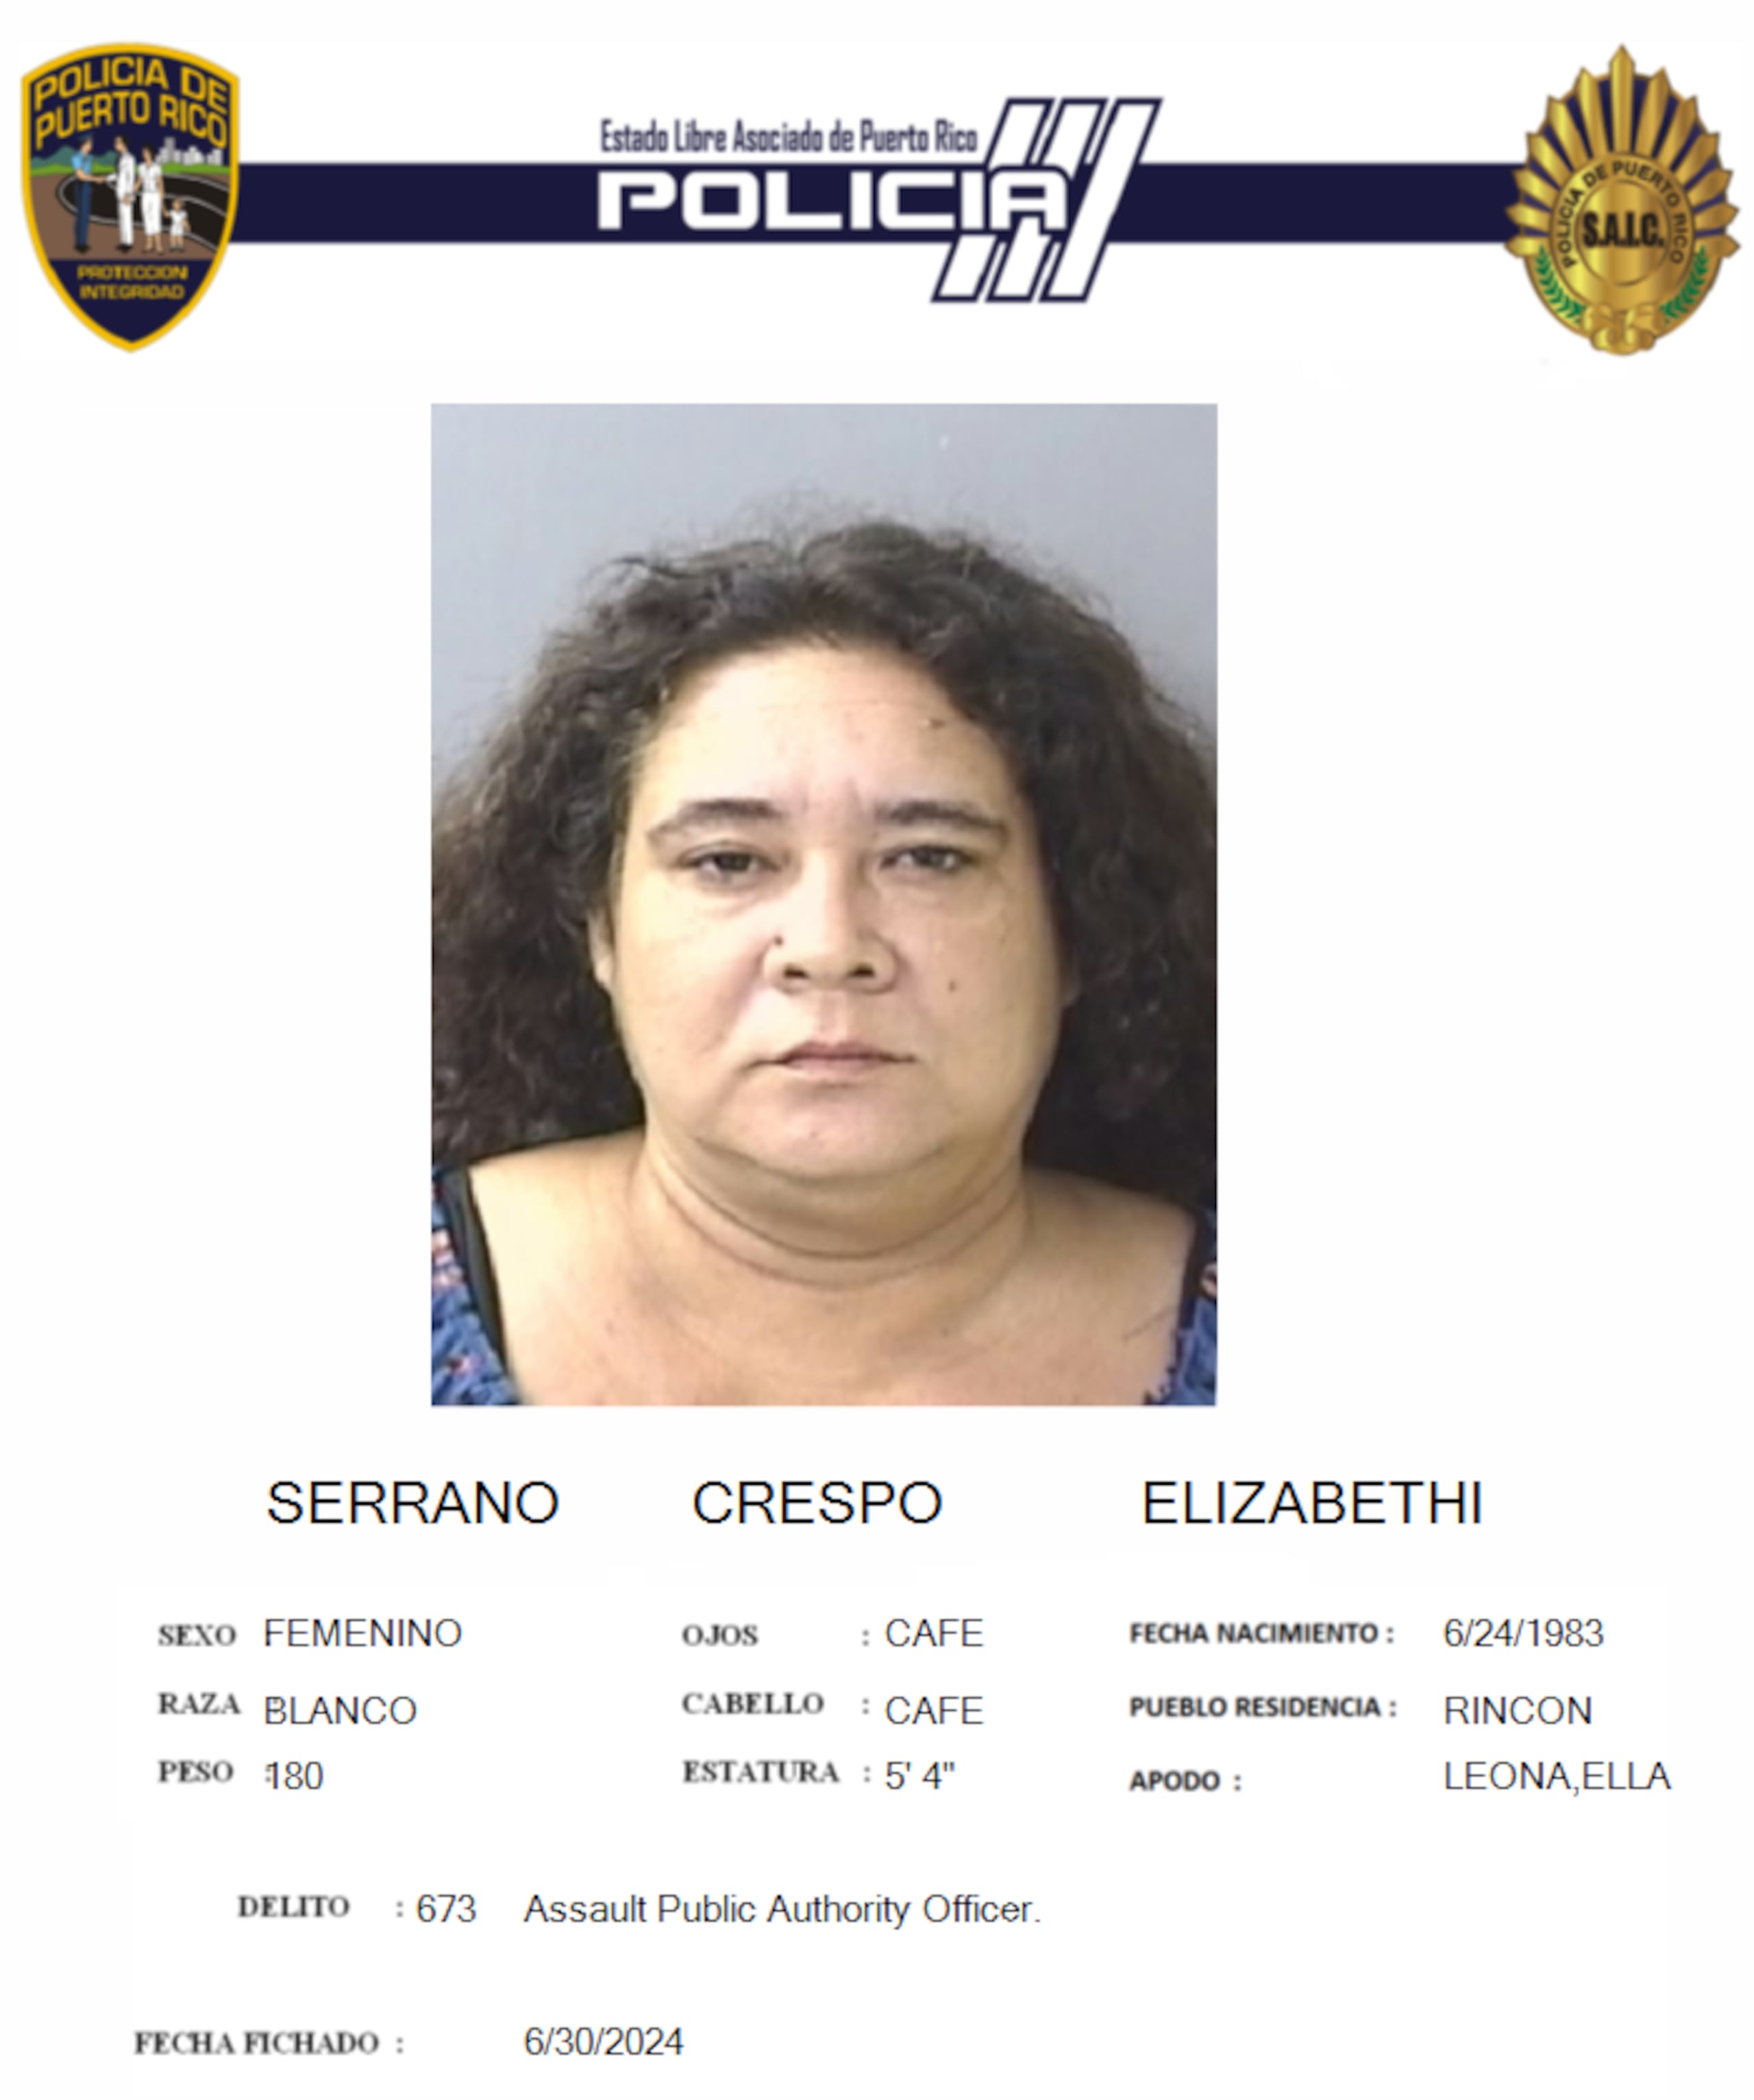 Elizabeth Serrano Crespo enfrenta un cargo por delito de empleo de violencia o intimidación contra la autoridad pública.